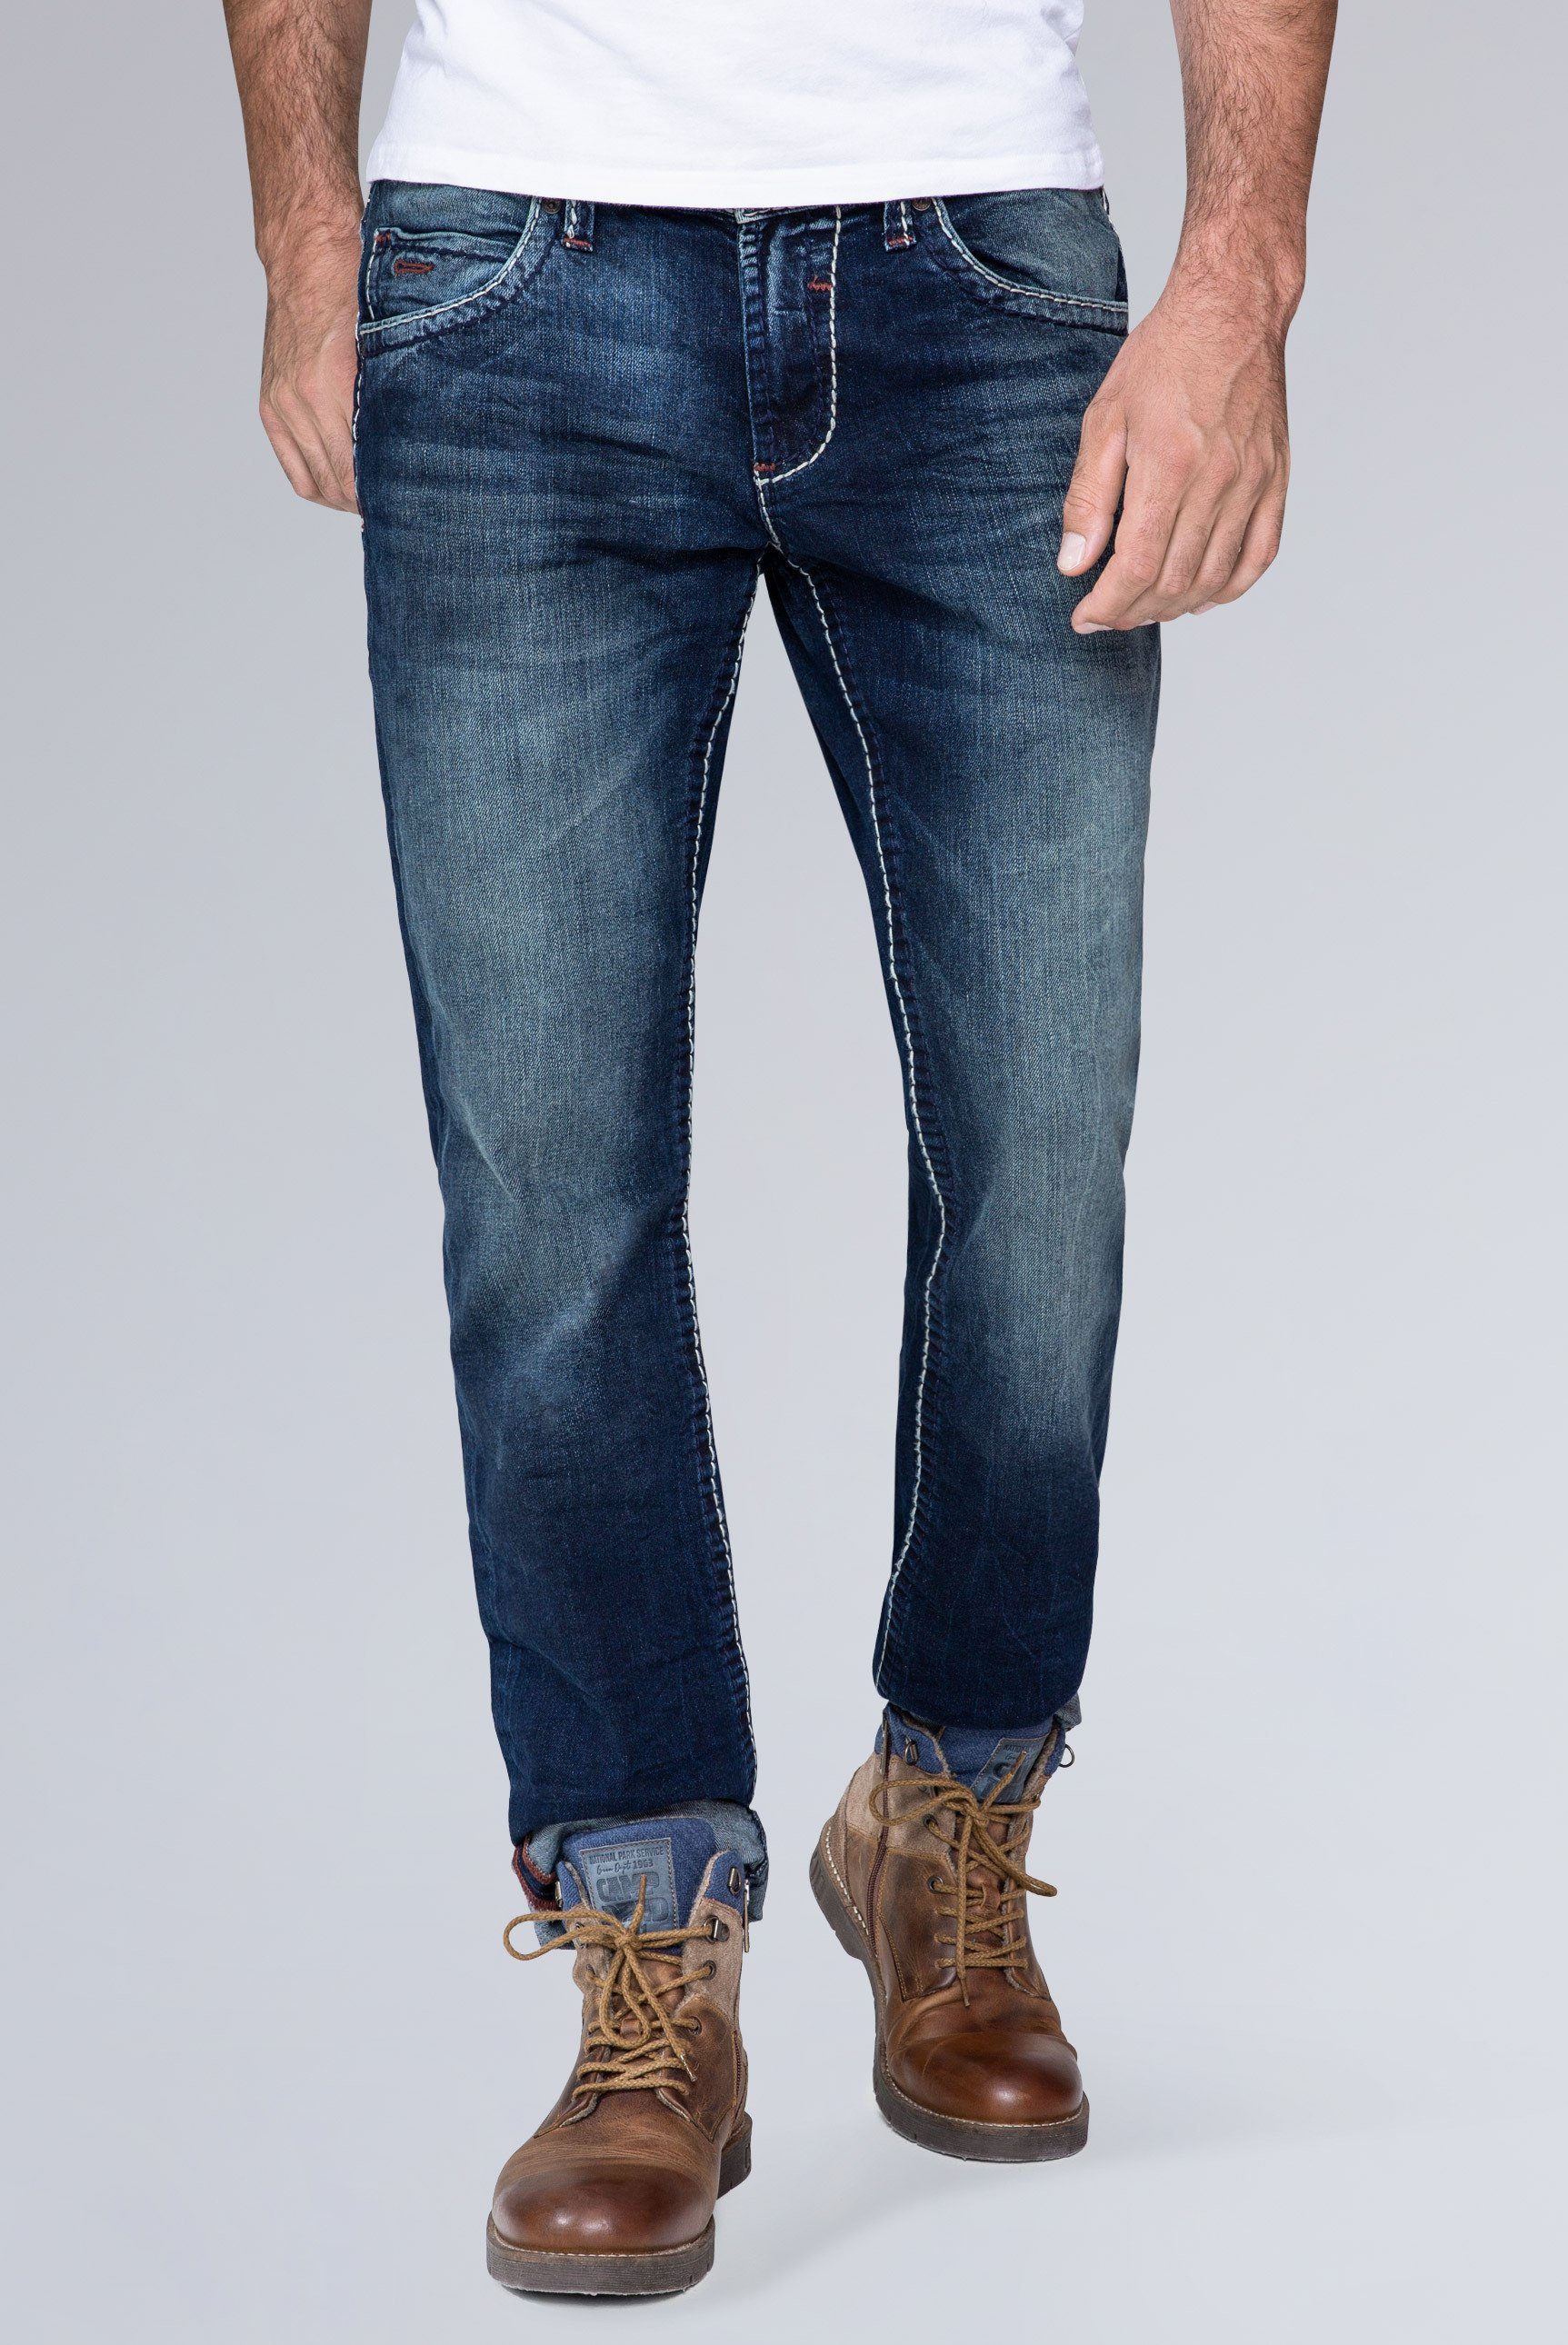 CAMP DAVID Straight-Jeans »NI:CO:R611« mit markanten Steppnähten online  kaufen | OTTO